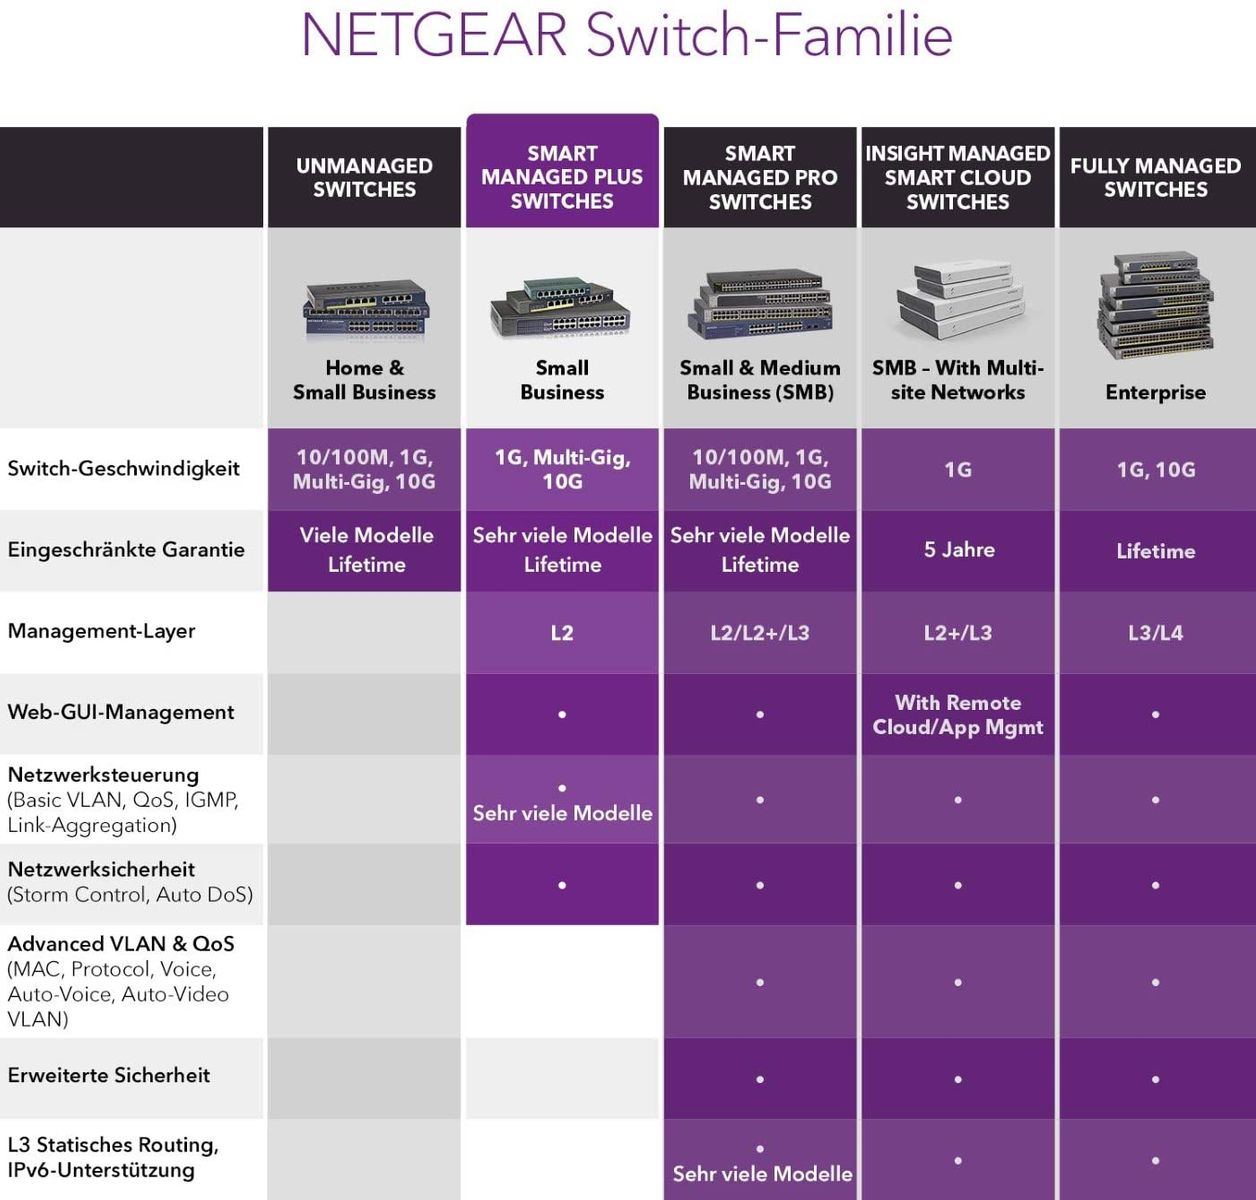 Netgear GS308E Managed Gigabit Ethernet (10 100 1000) Schwarz